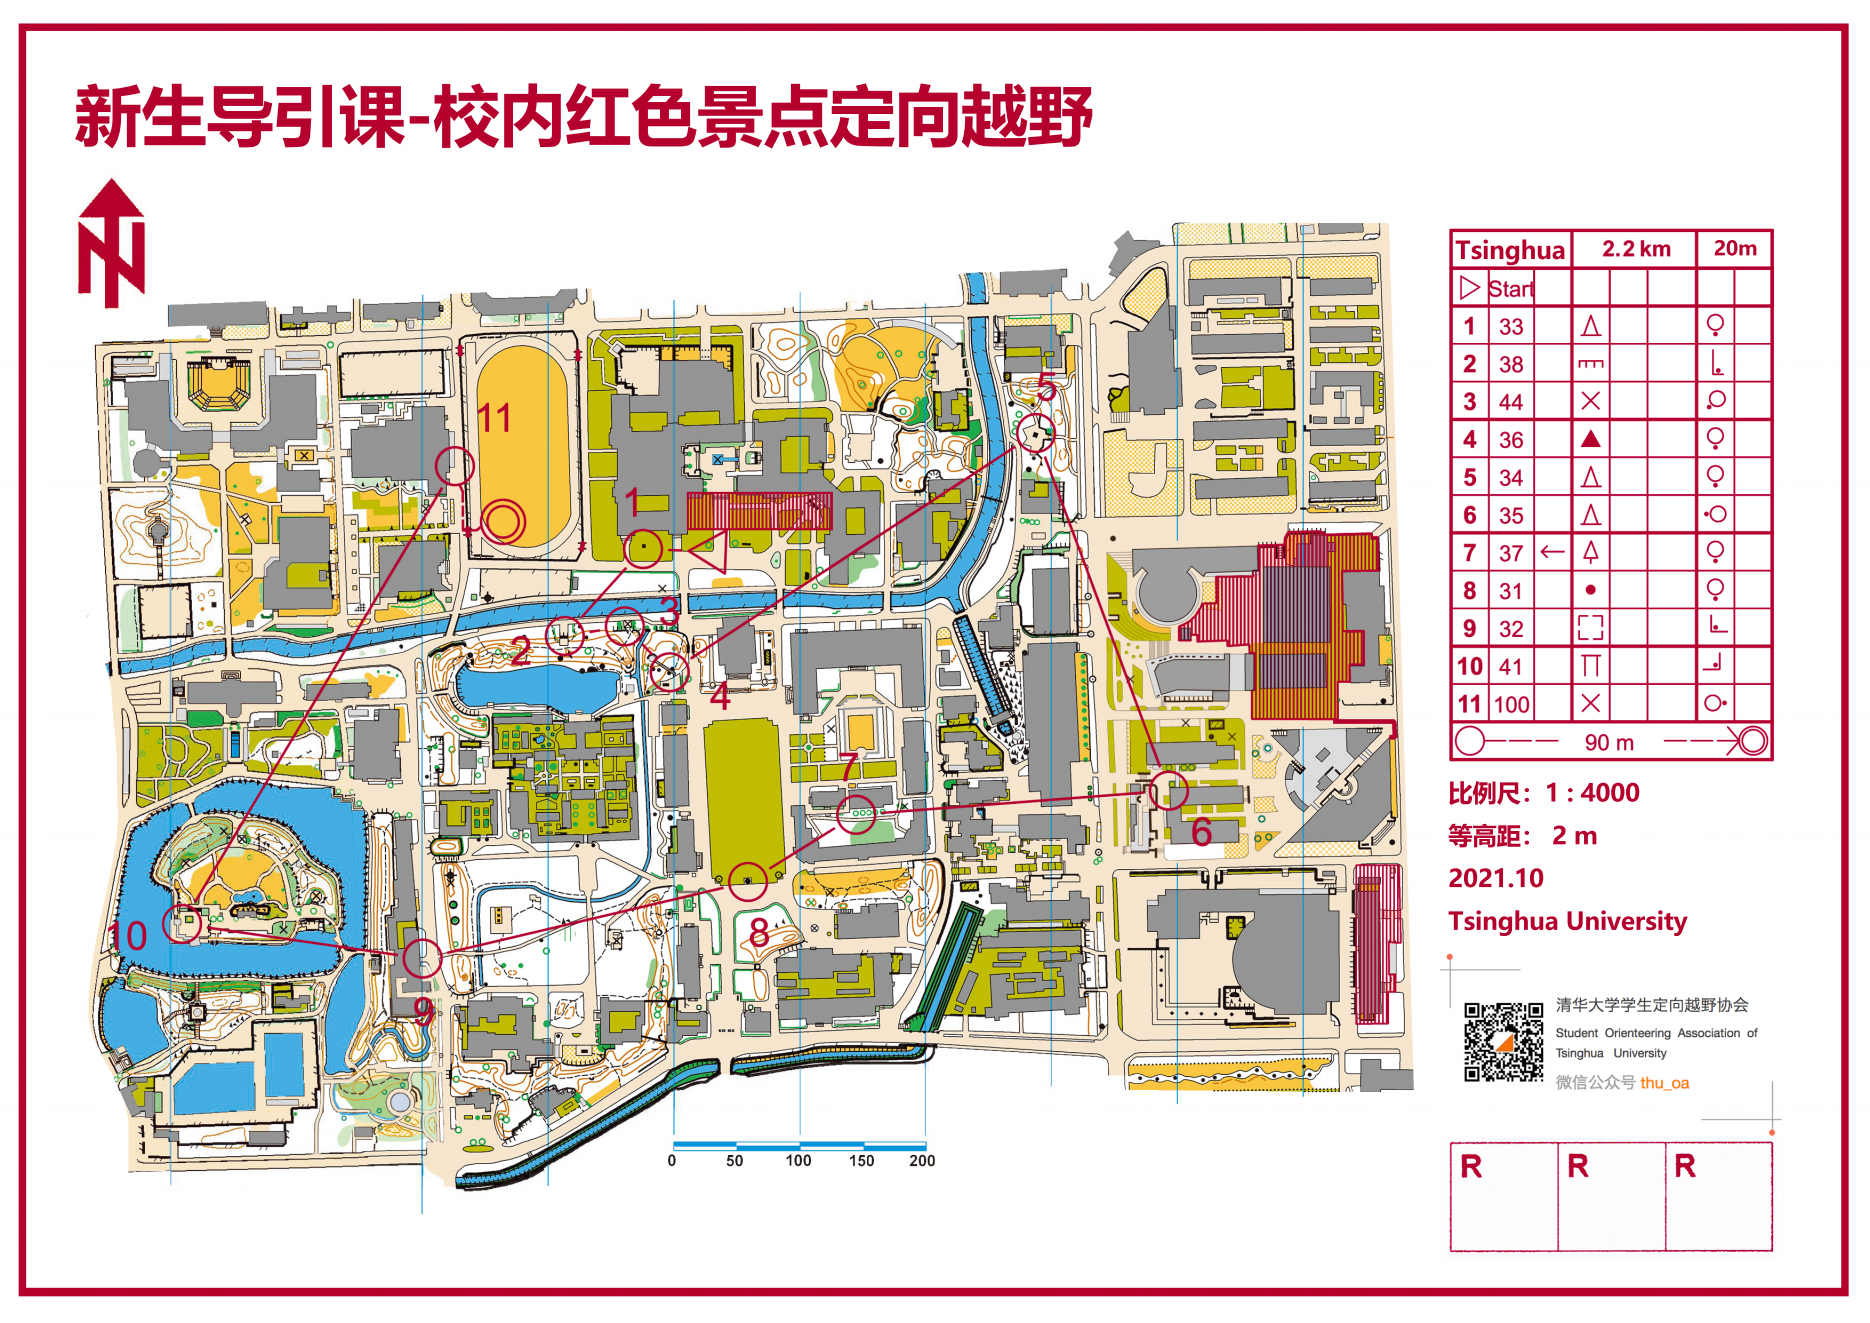 20210102-清华大学“新生导引课”建设纪实-佚名-学生参加校内红色景点定向越野活动1.png